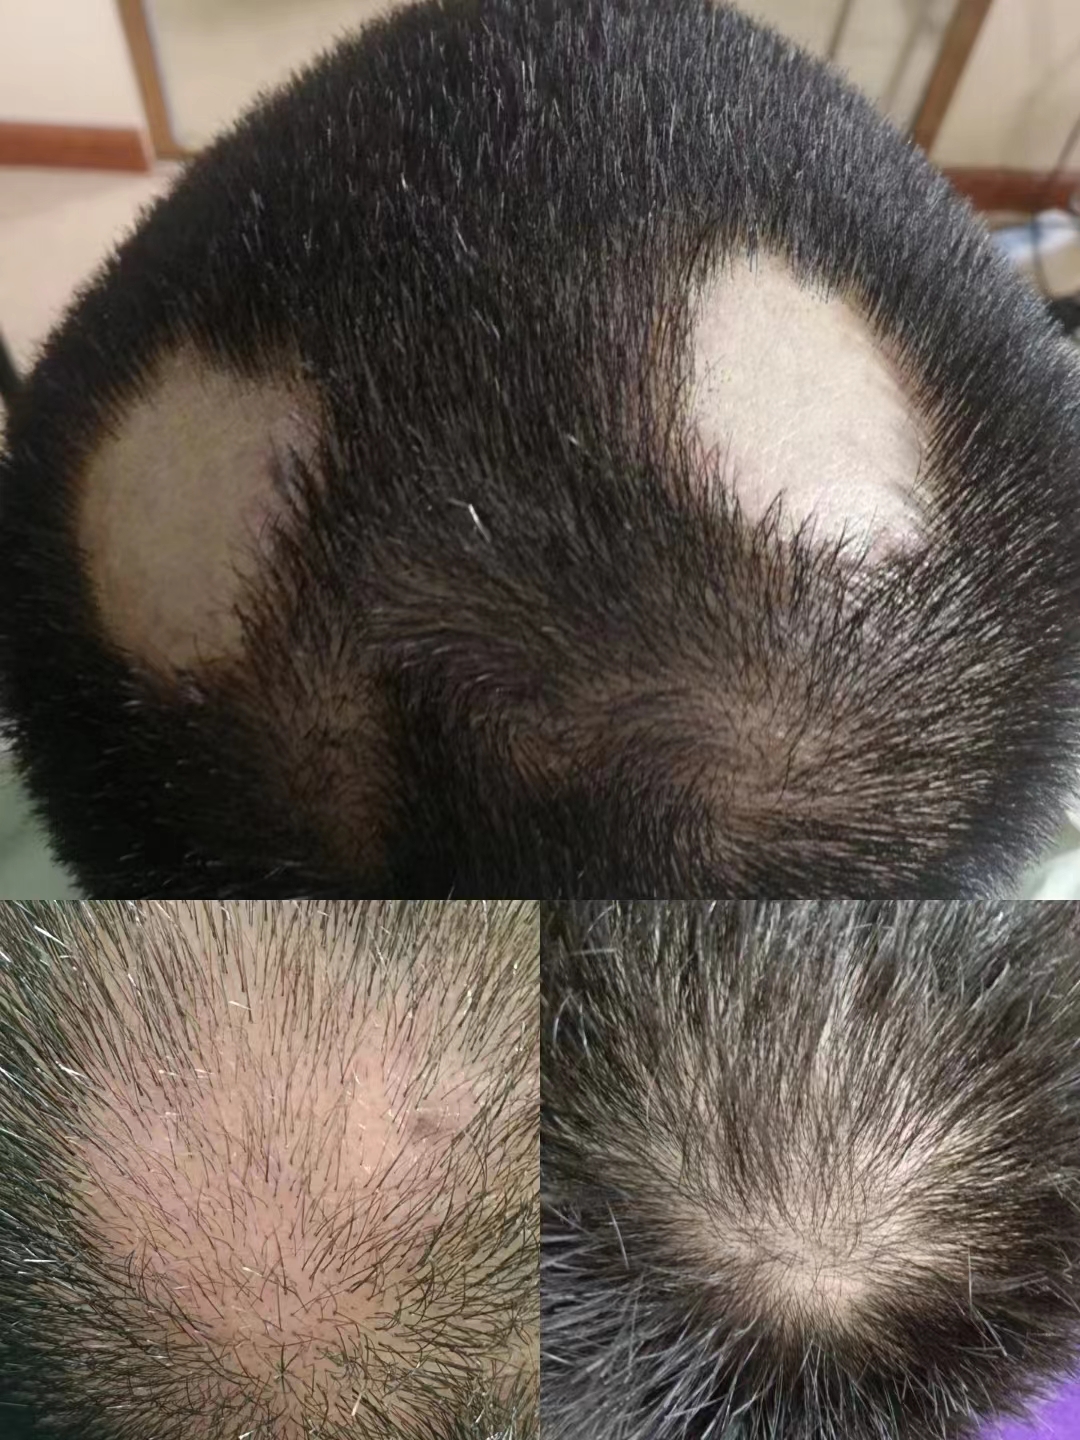 秀丝顿植物养发是目前最专业最科学的养发。